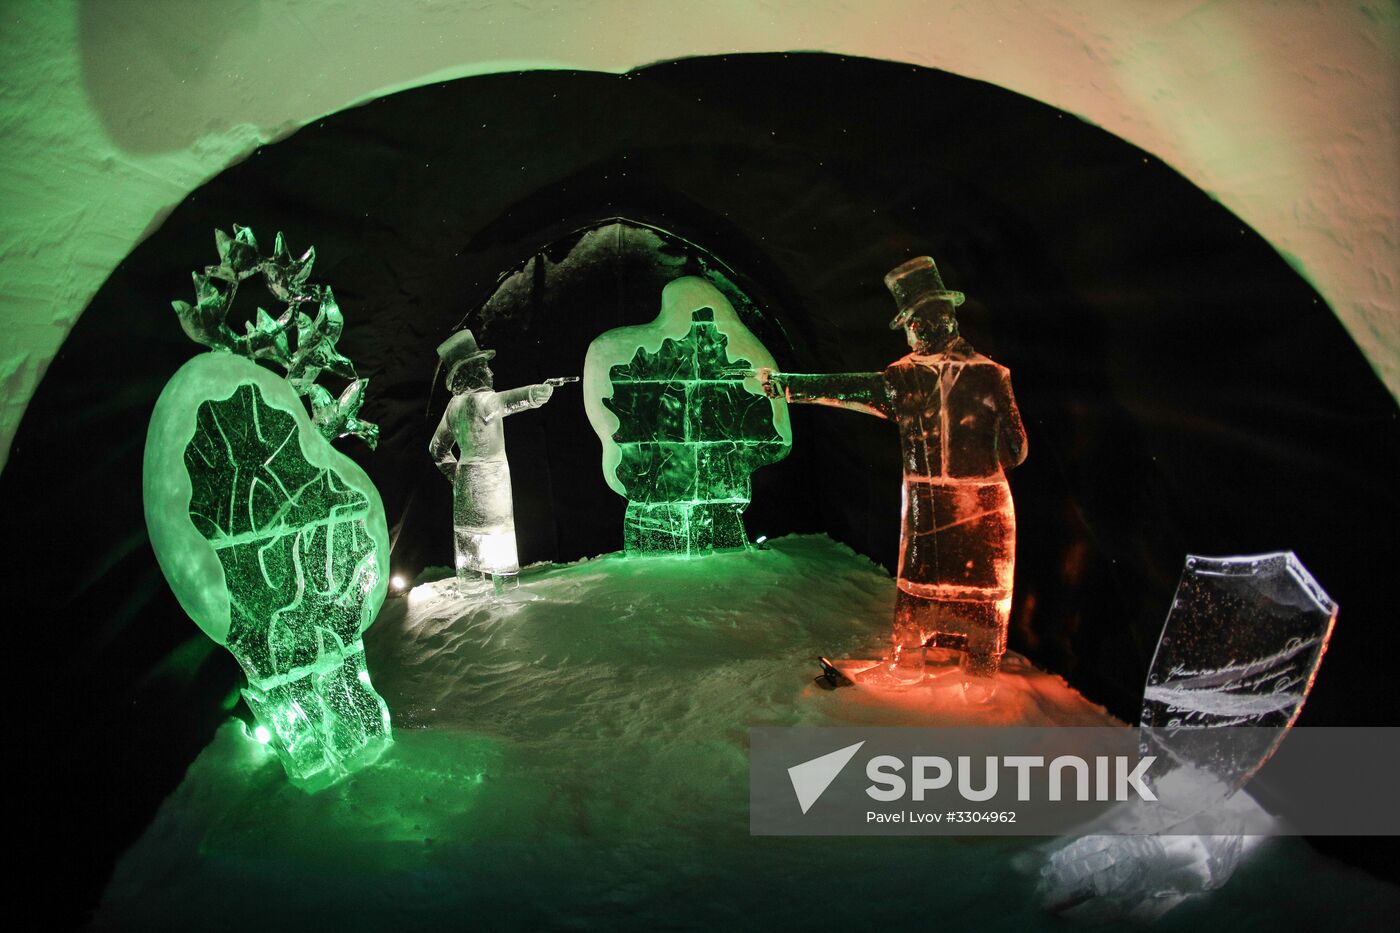 Snow Village tourist center in Murmansk Region